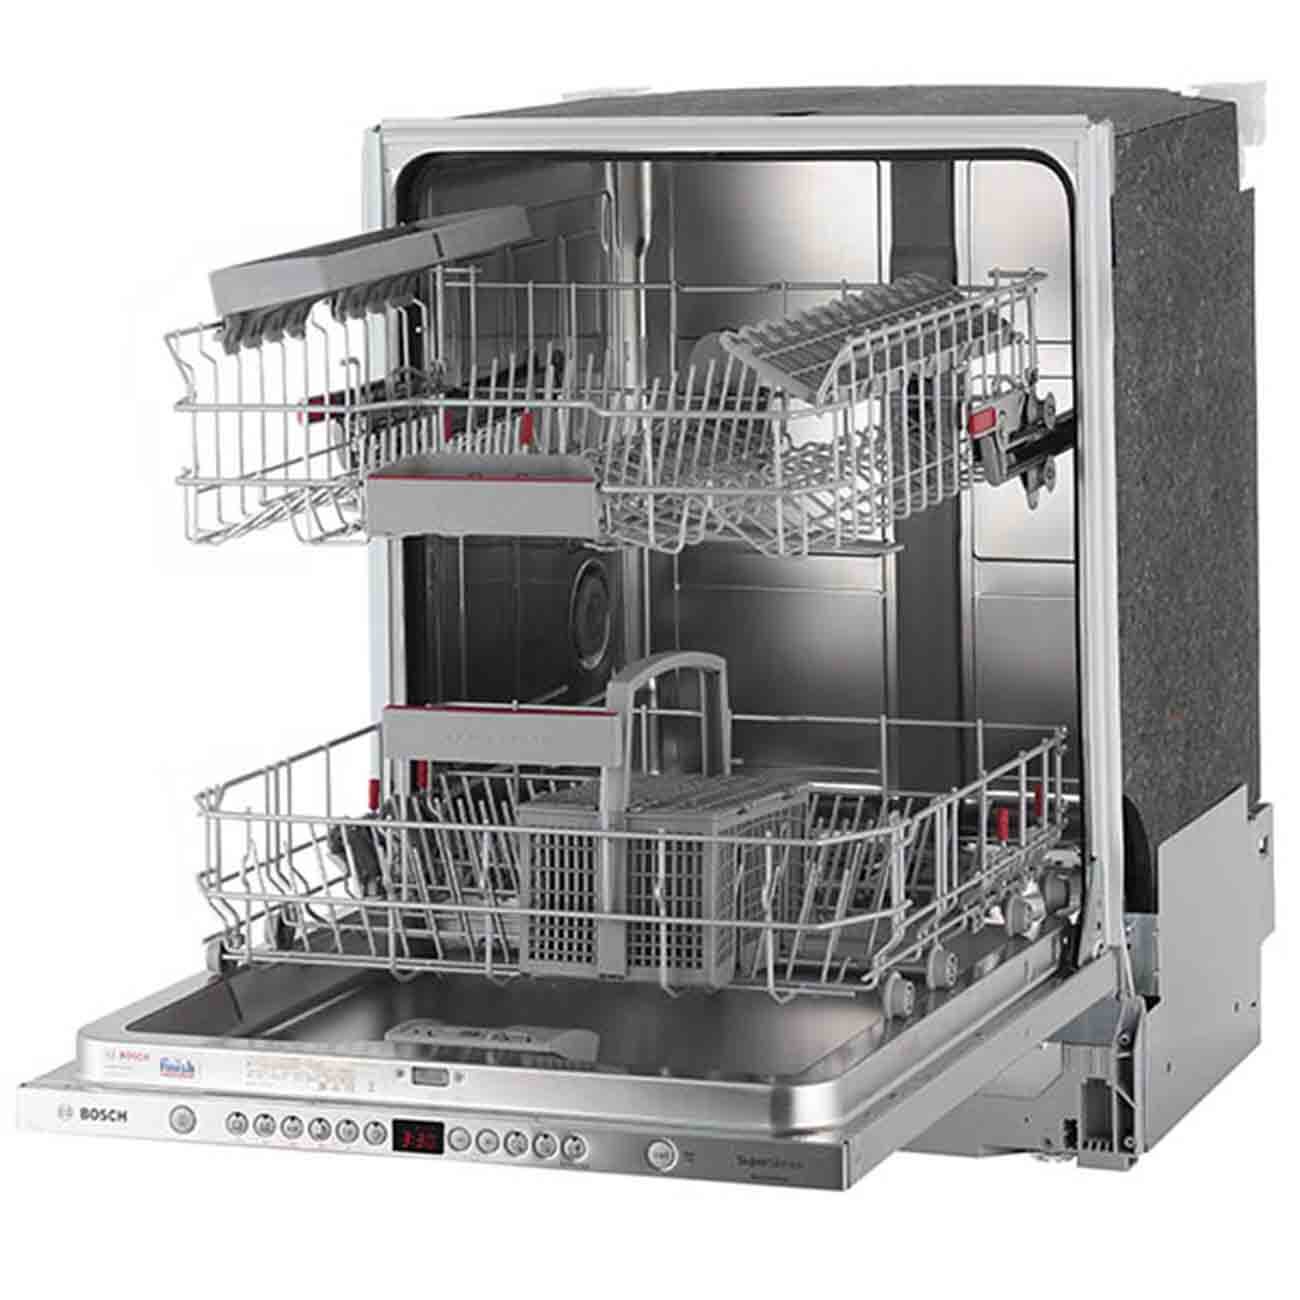 Купить посудомоечную машину 60 см встраиваемая bosch. Посудомоечная машина Bosch smv46ix03r. Посудомоечная машина встраиваемая 60 бош. Bosch serie посудомоечная машина 60 см встраиваемая. Посудомоечная машина Bosch serie 4.